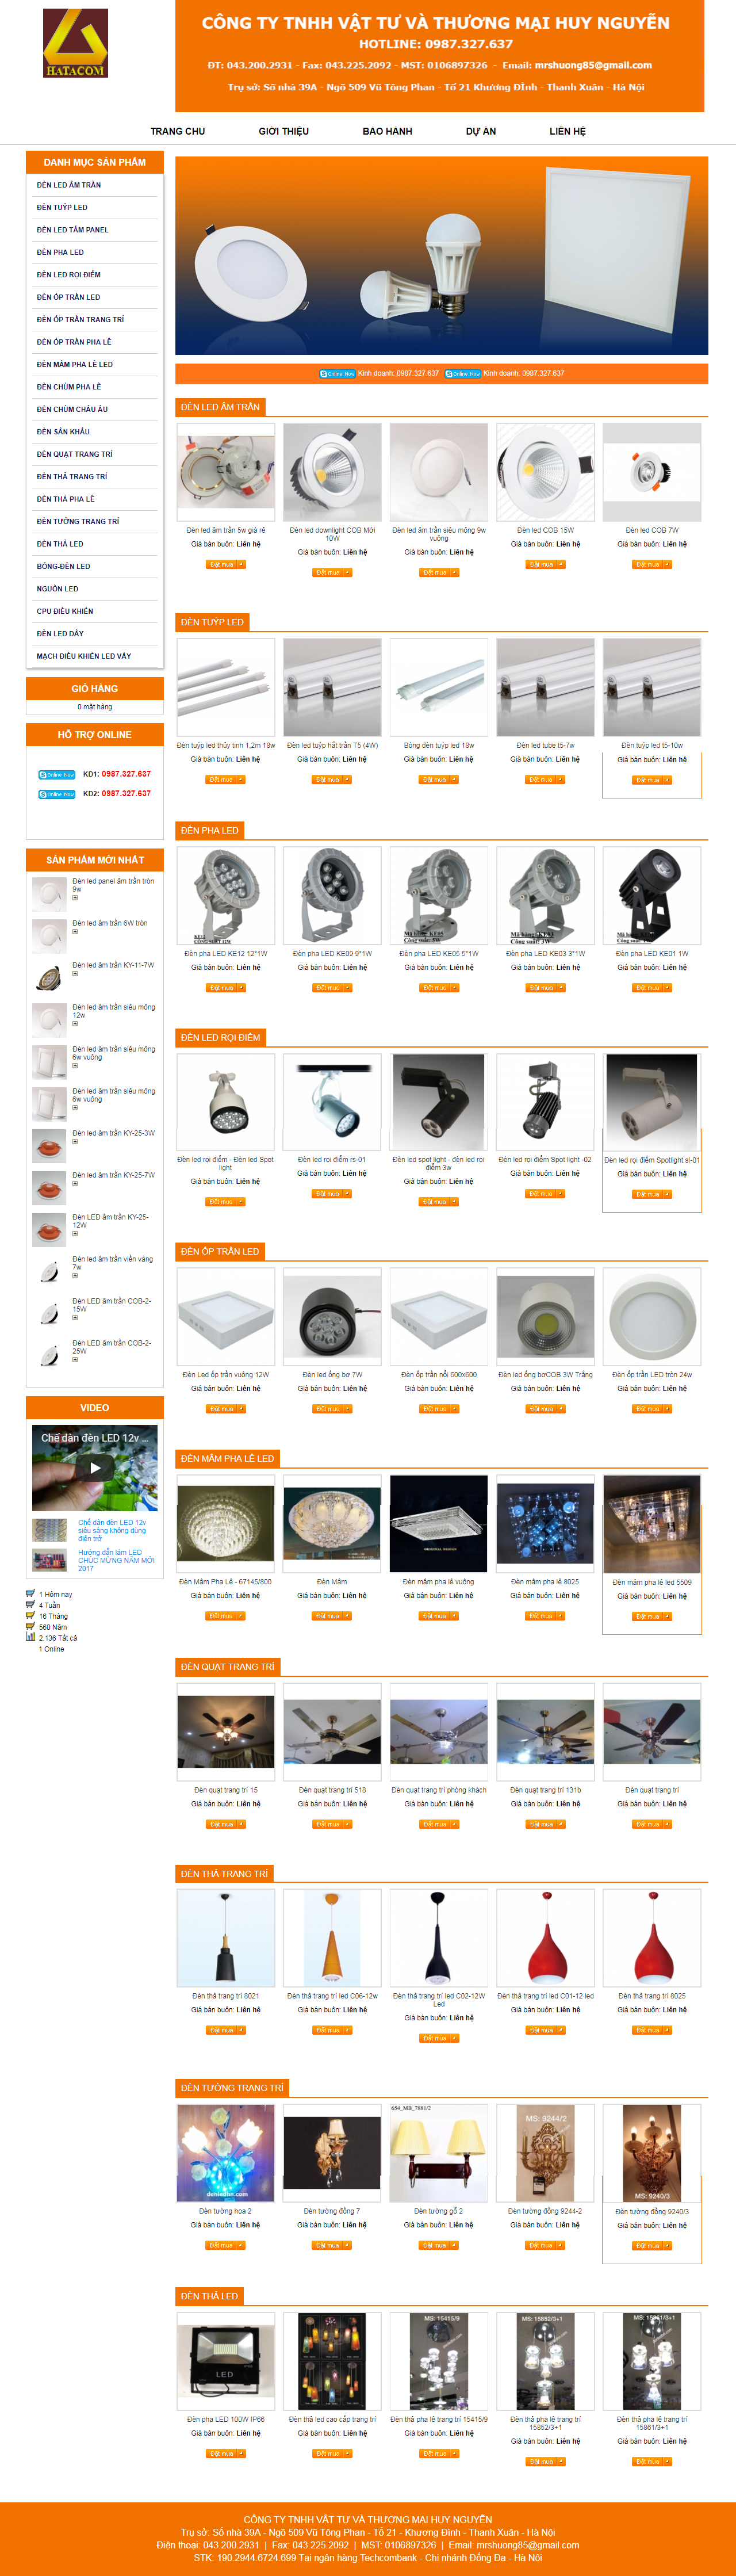 thiết kế web giá rẻ đèn led